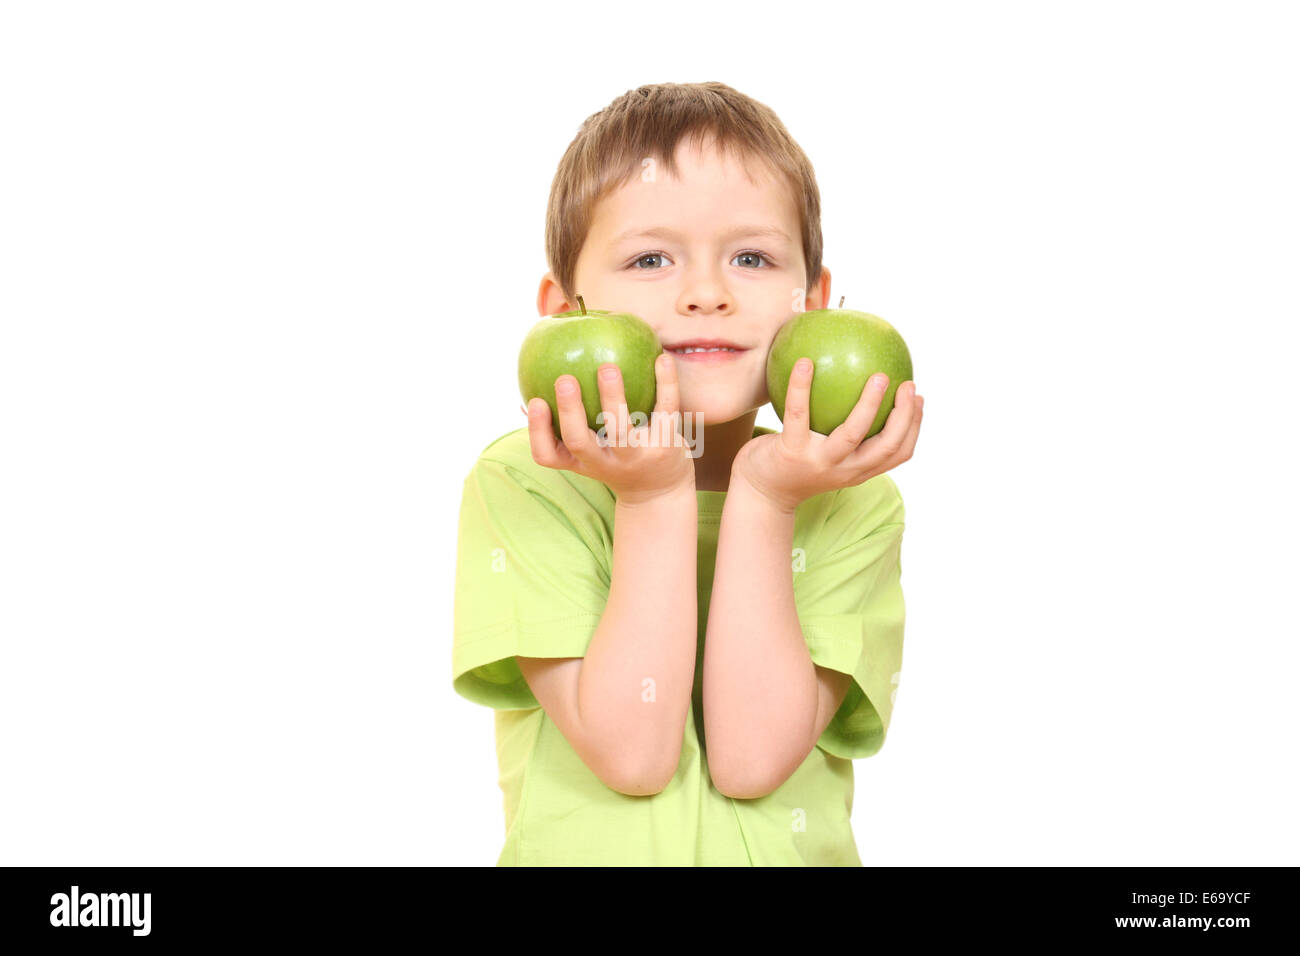 boy,child,healthy diet Stock Photo